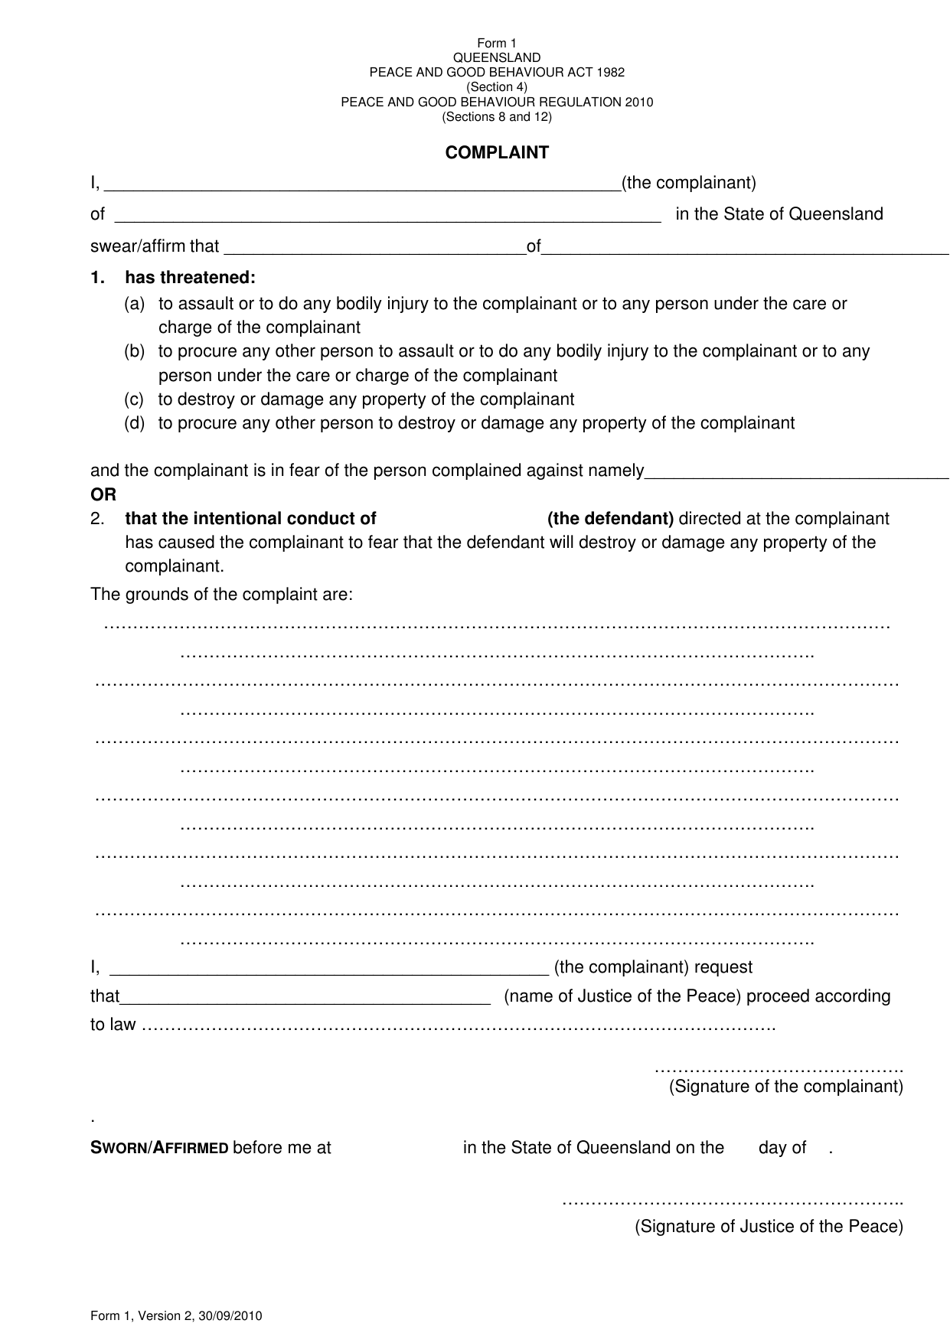 Form 1 Complaint - Queensland, Australia, Page 1